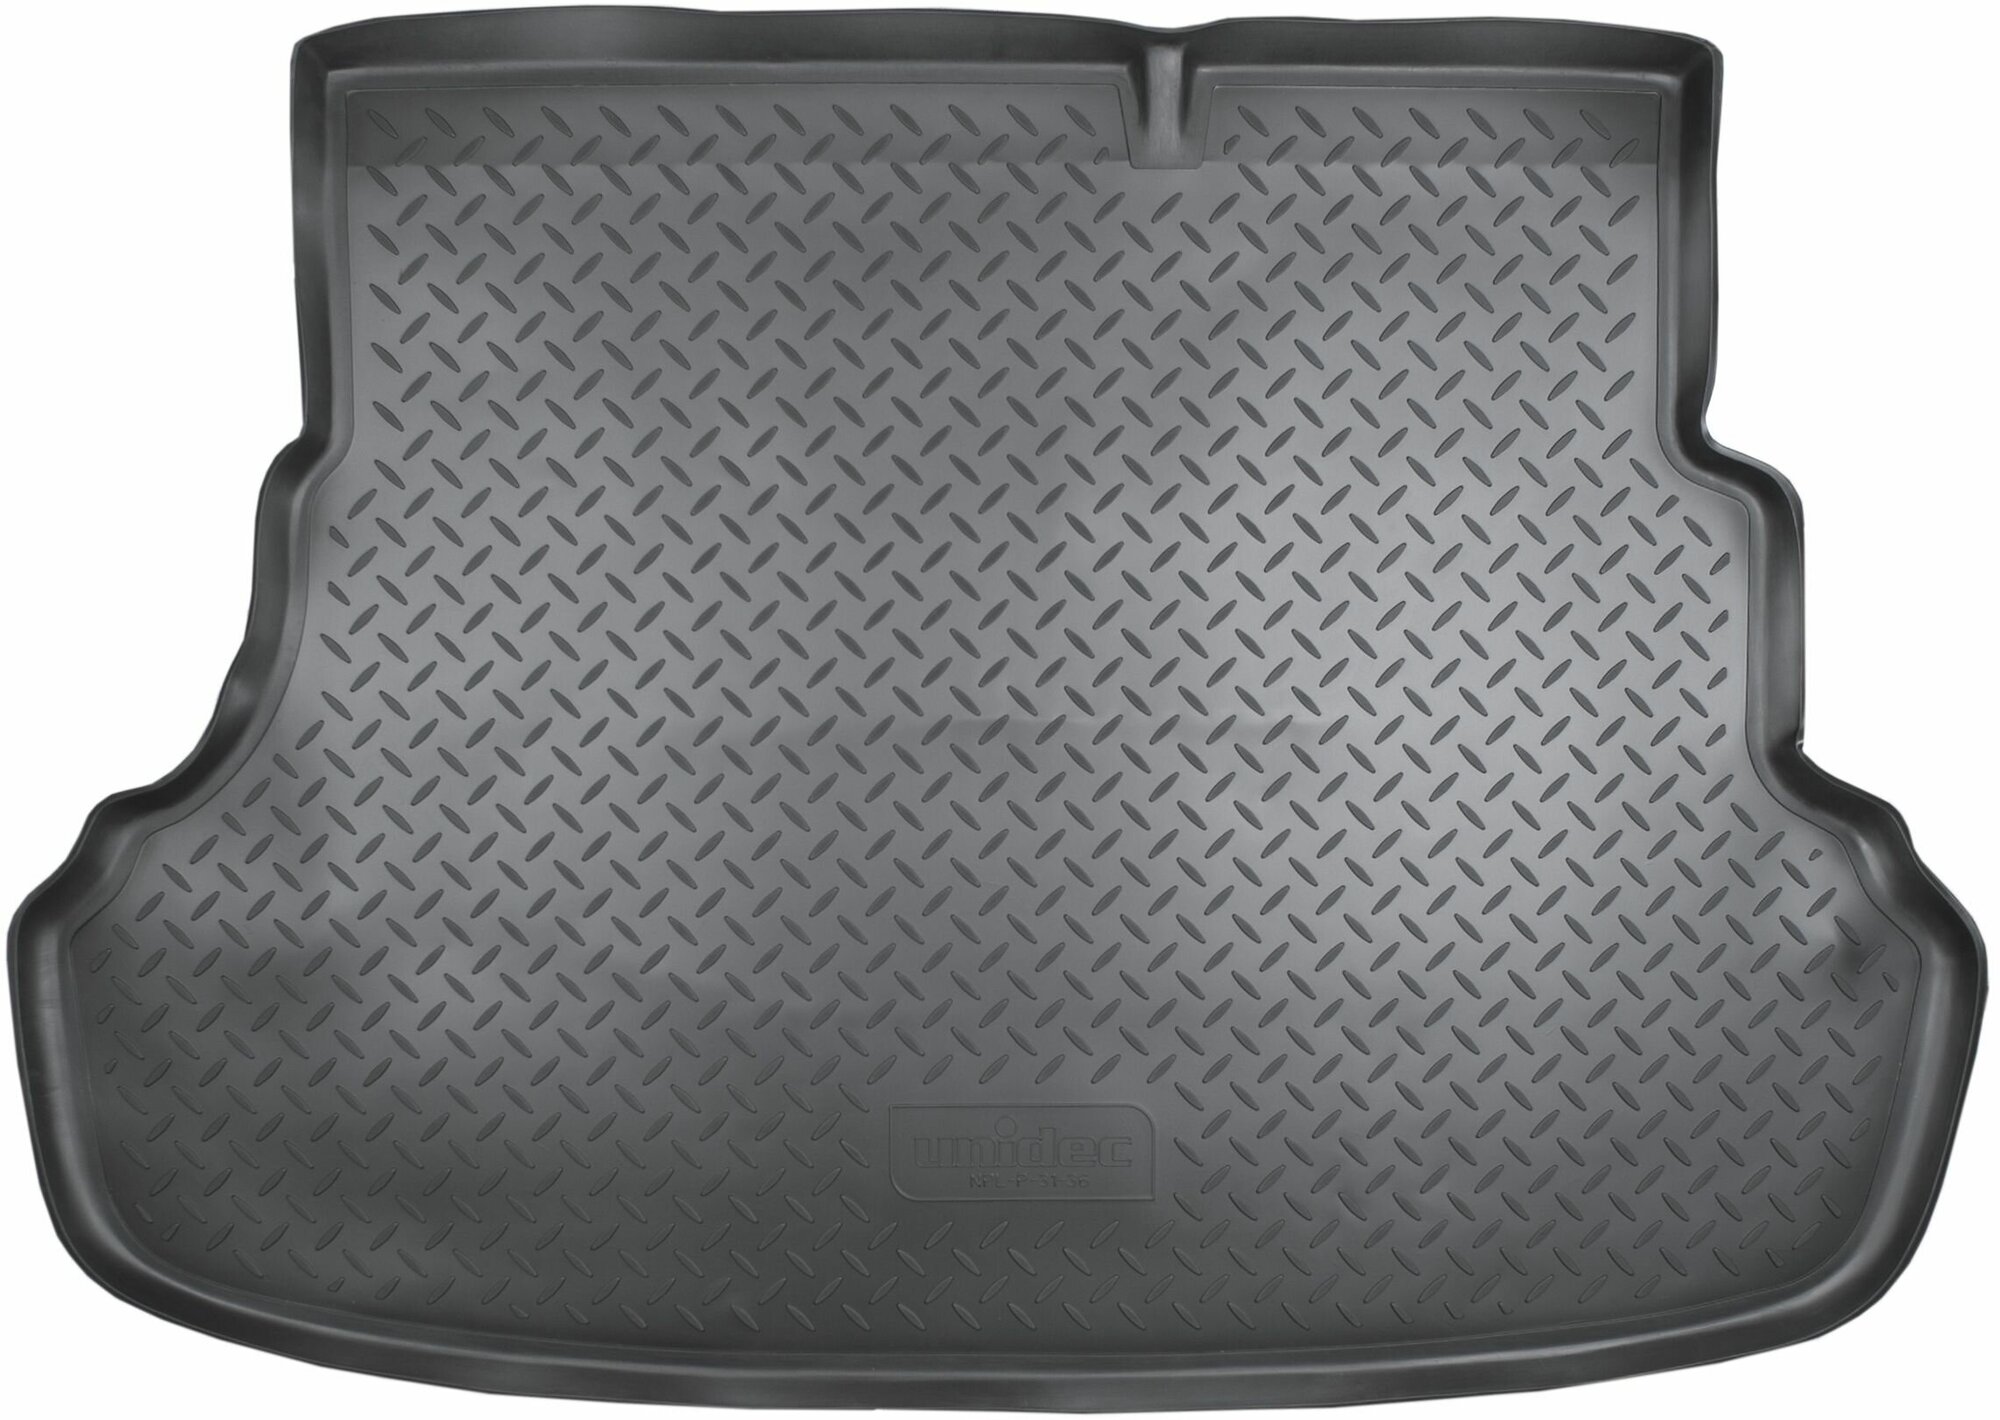 Коврик в багажник (полиуретан) Hyundai Solaris SD- седан (2010-) (для а/м со складывающимися сидениями) (NPL-P-31-36)